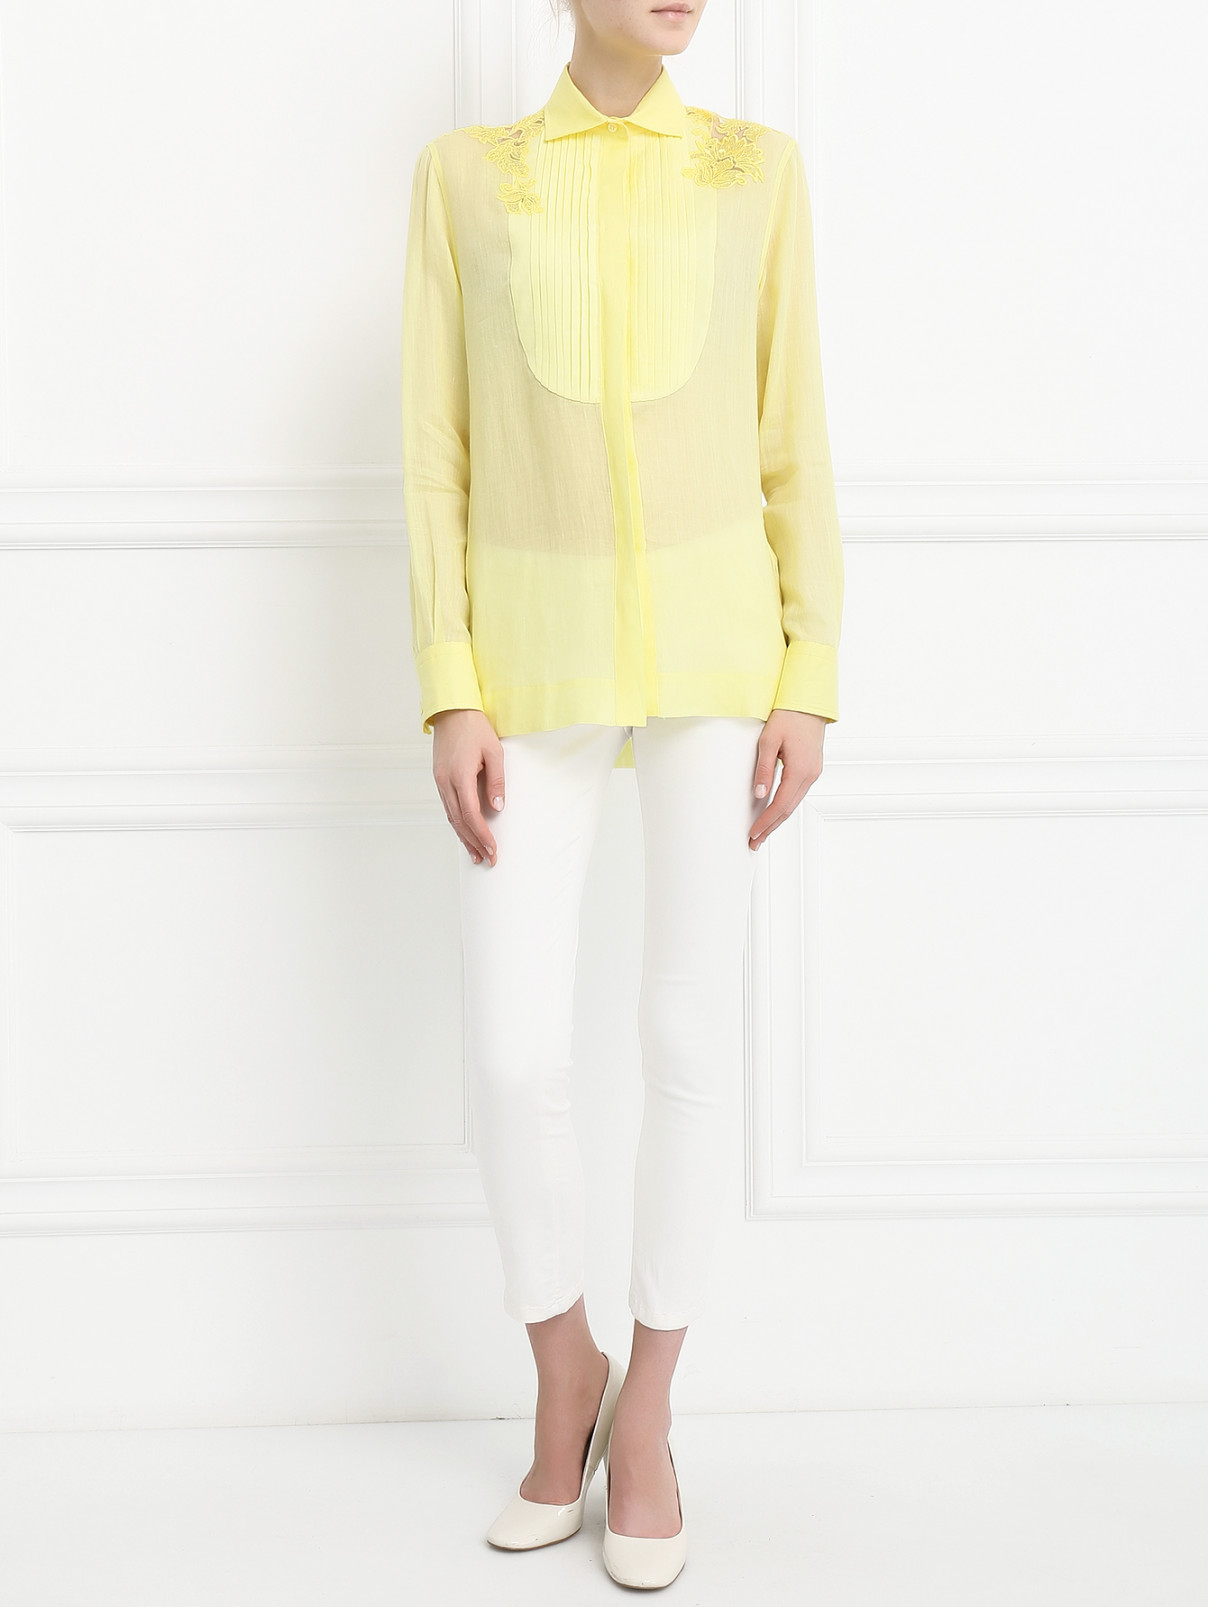 Блуза из льна с отделкой из кружева Ermanno Scervino  –  Модель Общий вид  – Цвет:  Желтый